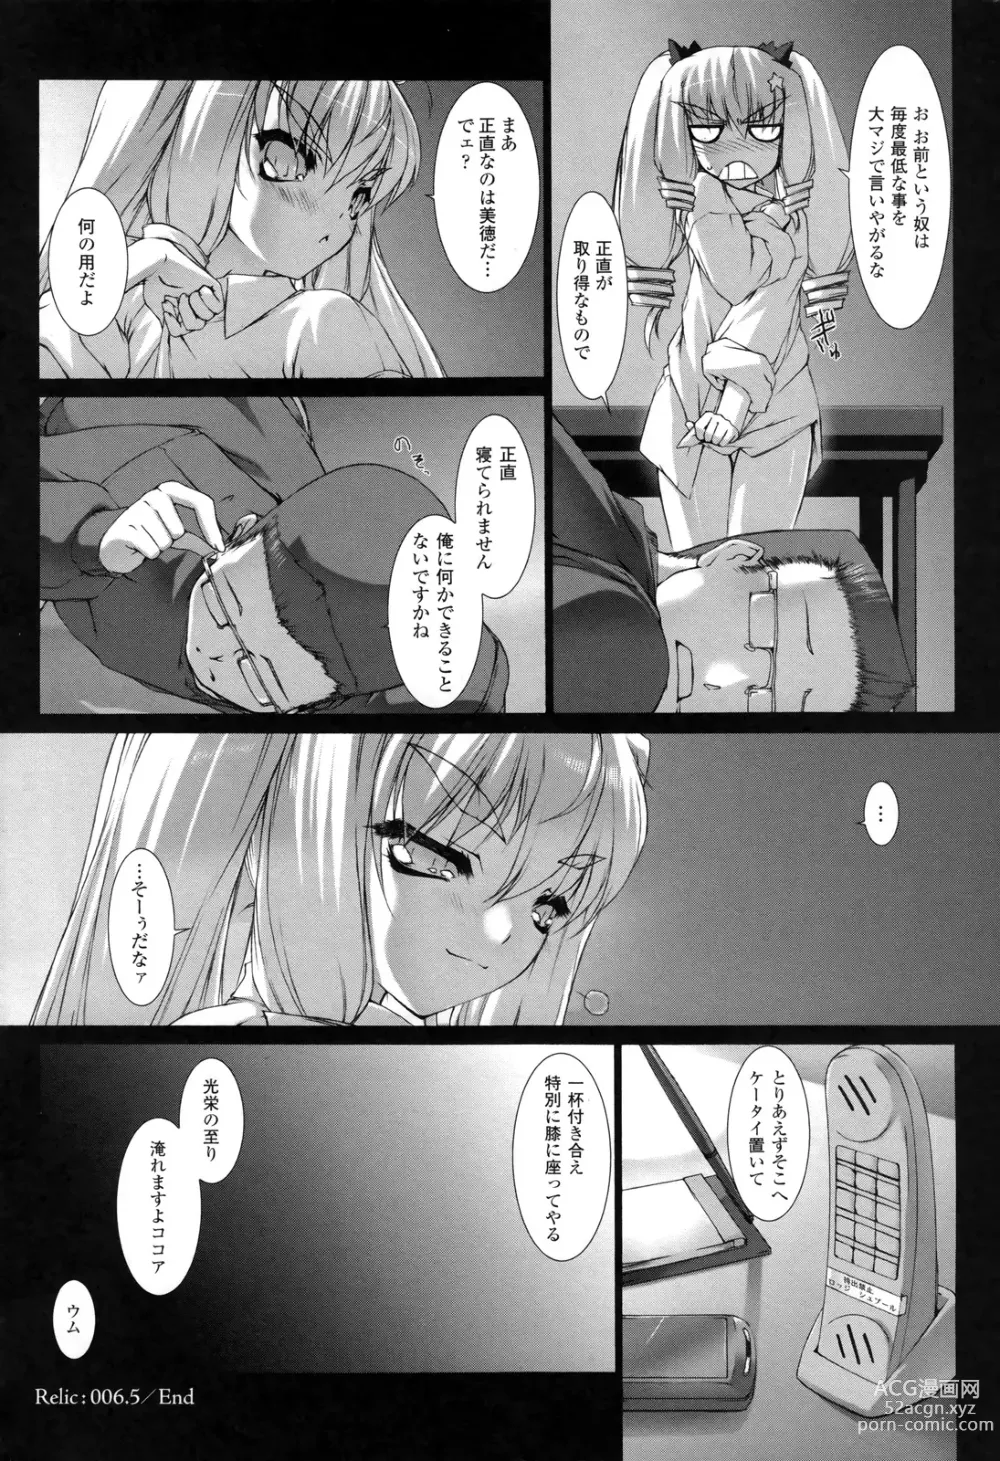 Page 7 of manga Ziggurat 2